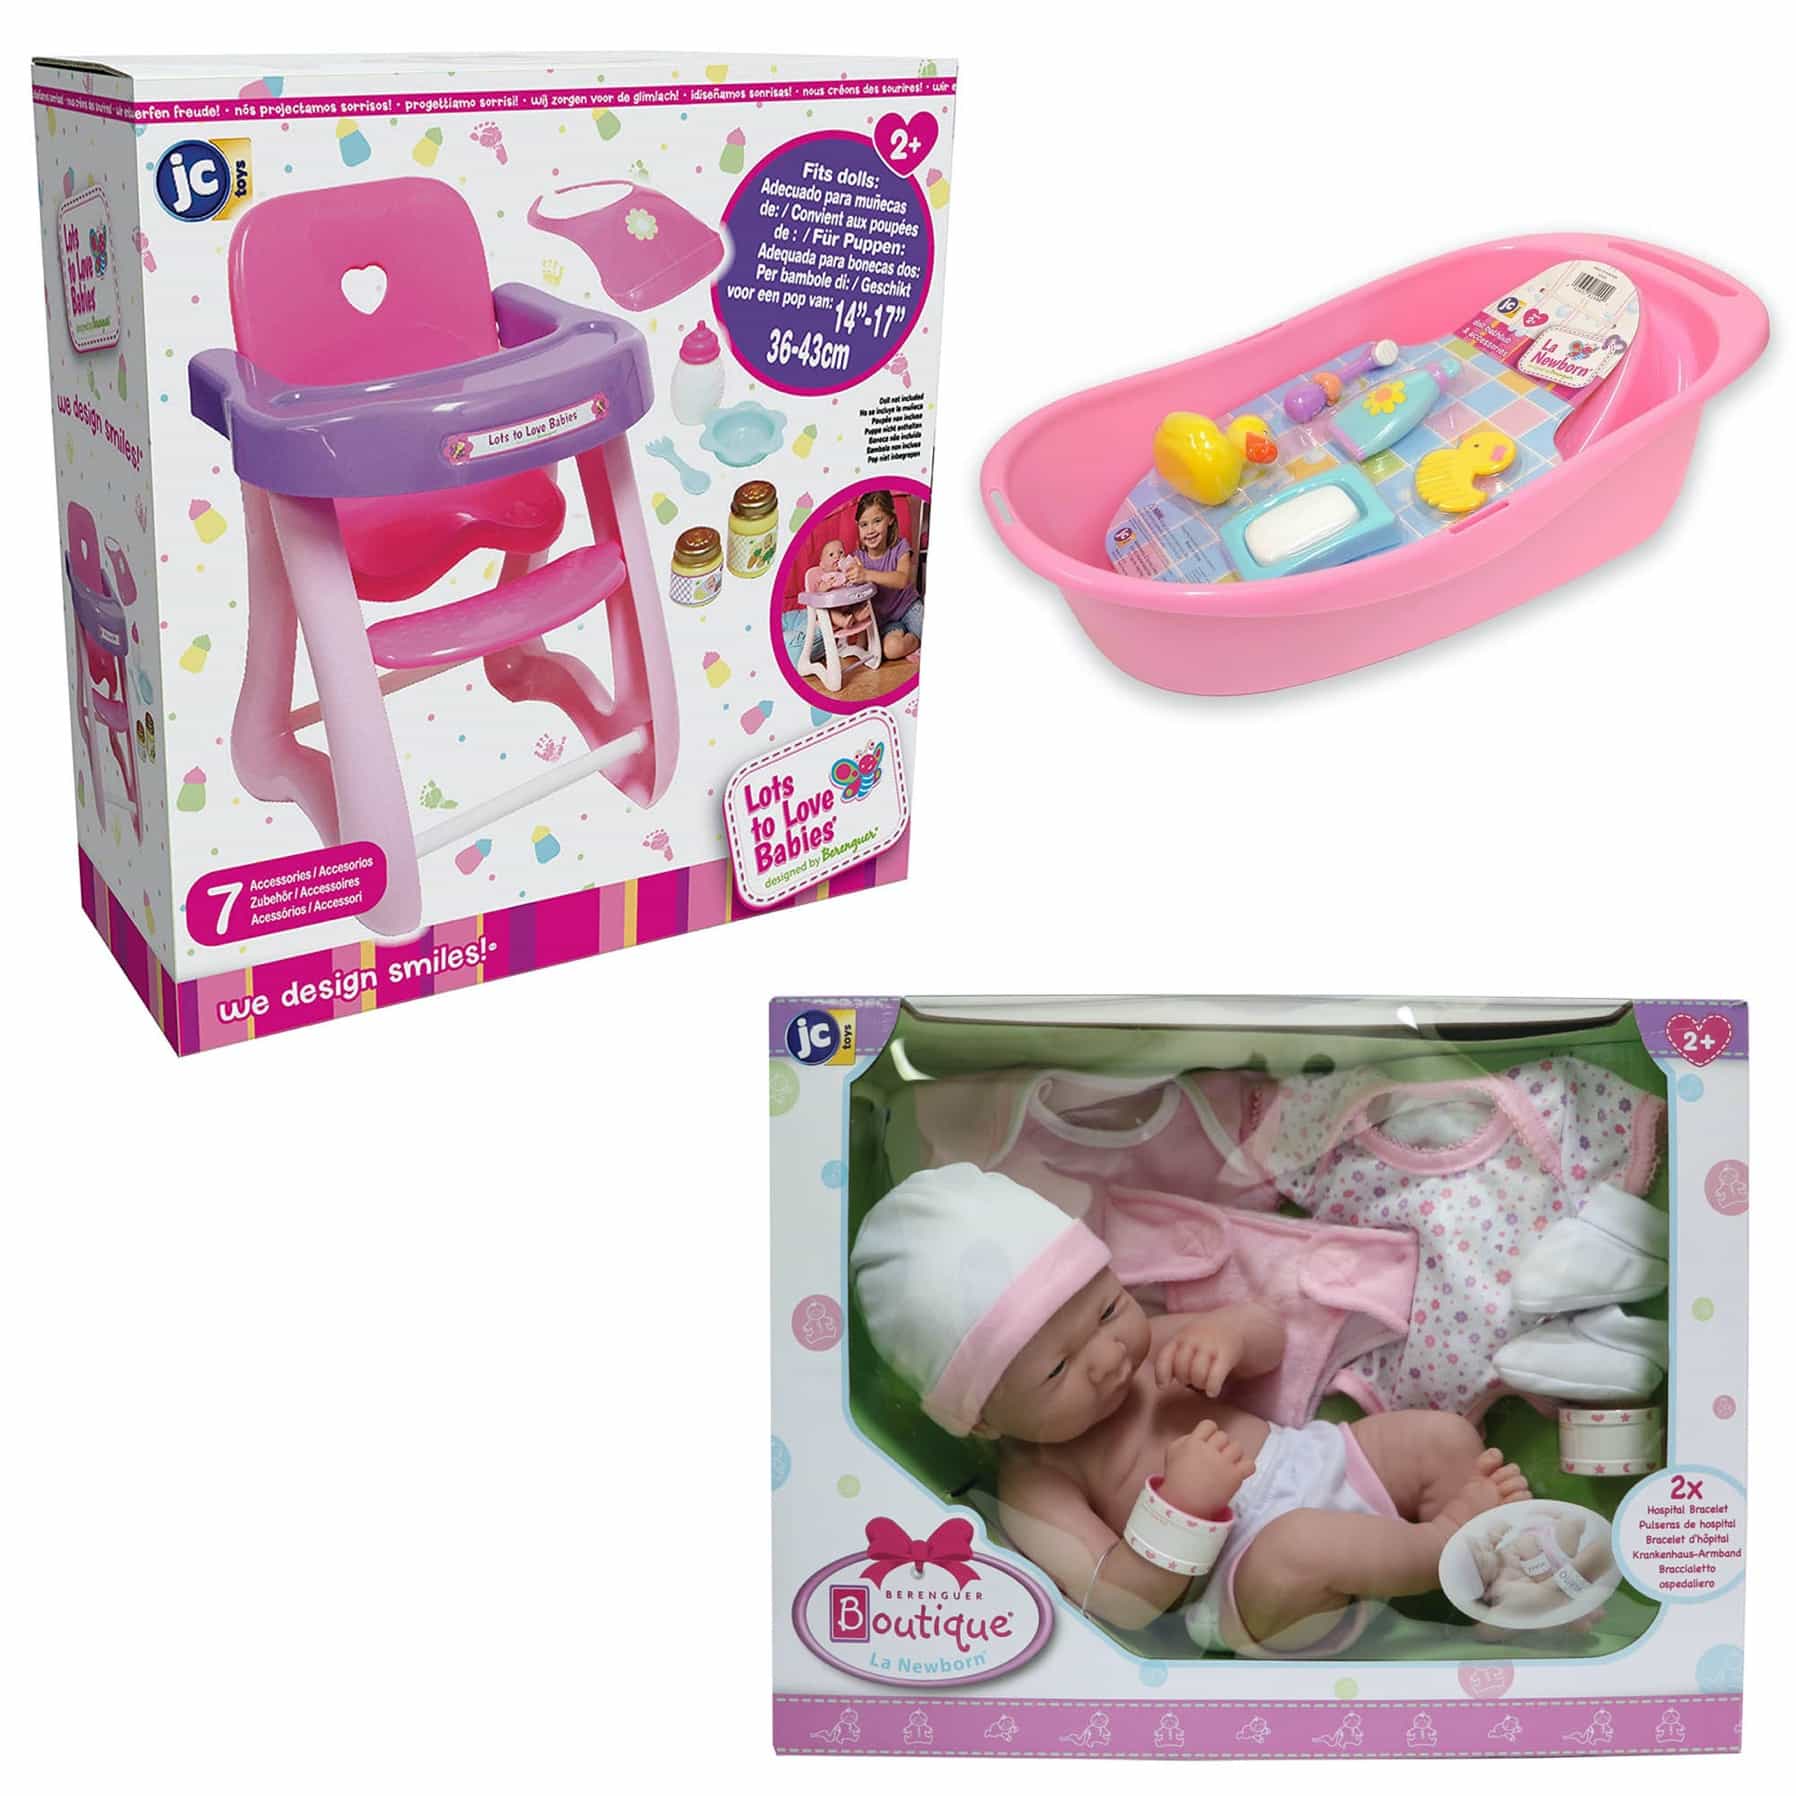 La Newborn Baby Doll Set Bathtub, La Newborn Realistic Baby Doll Bathtub Set